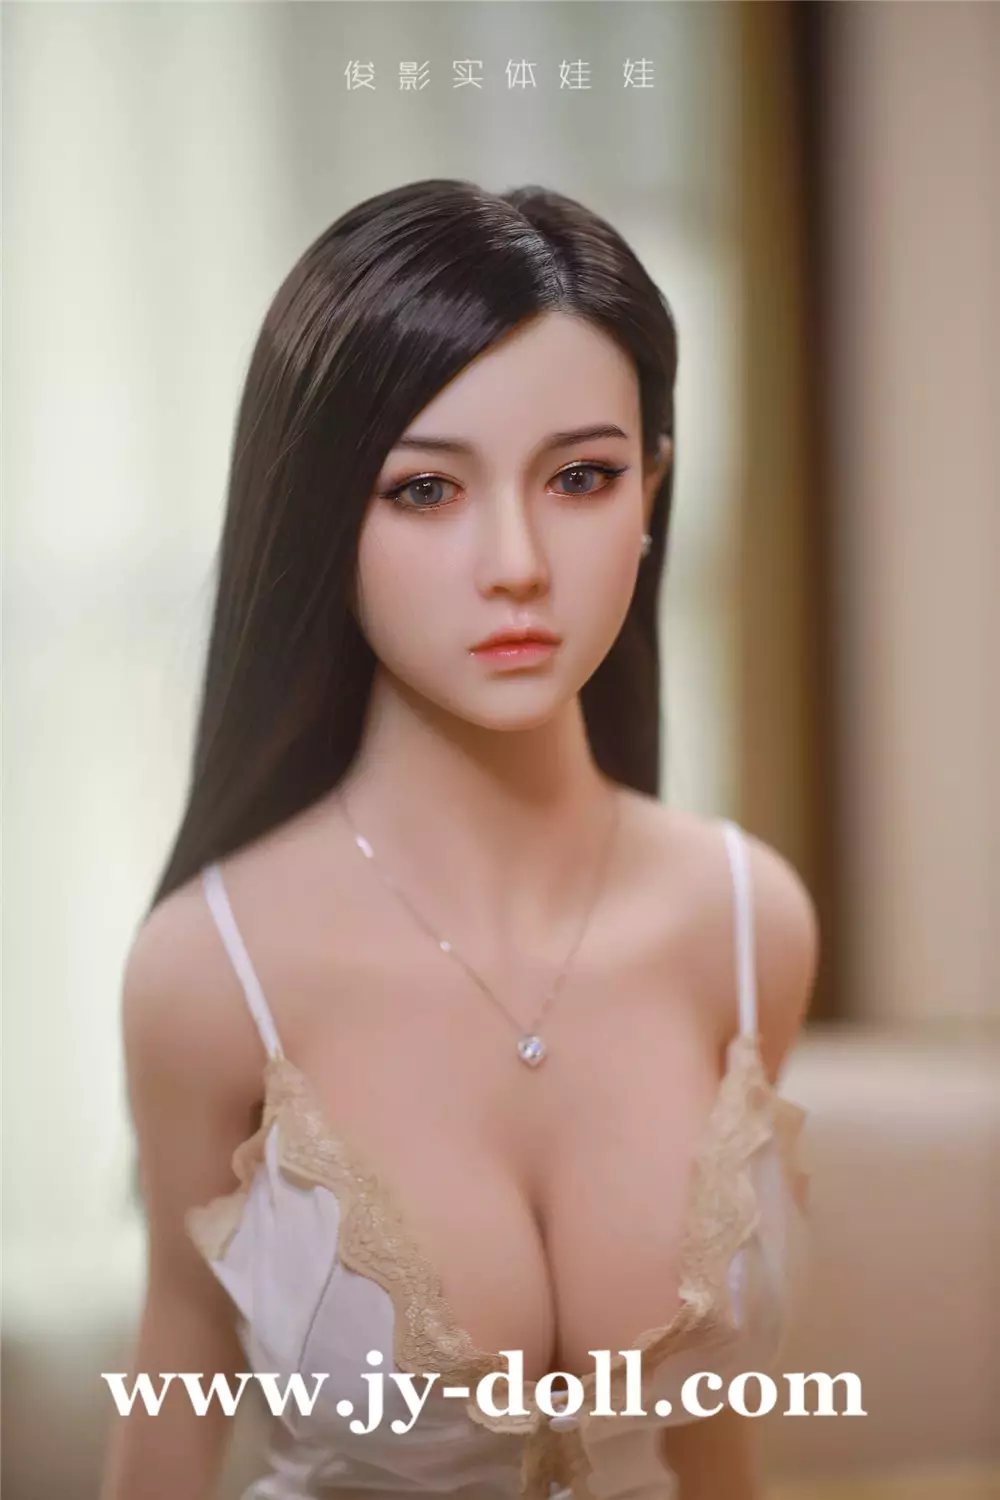 JY Doll 125cm BBW sex doll Xiao Qian (silicone head)